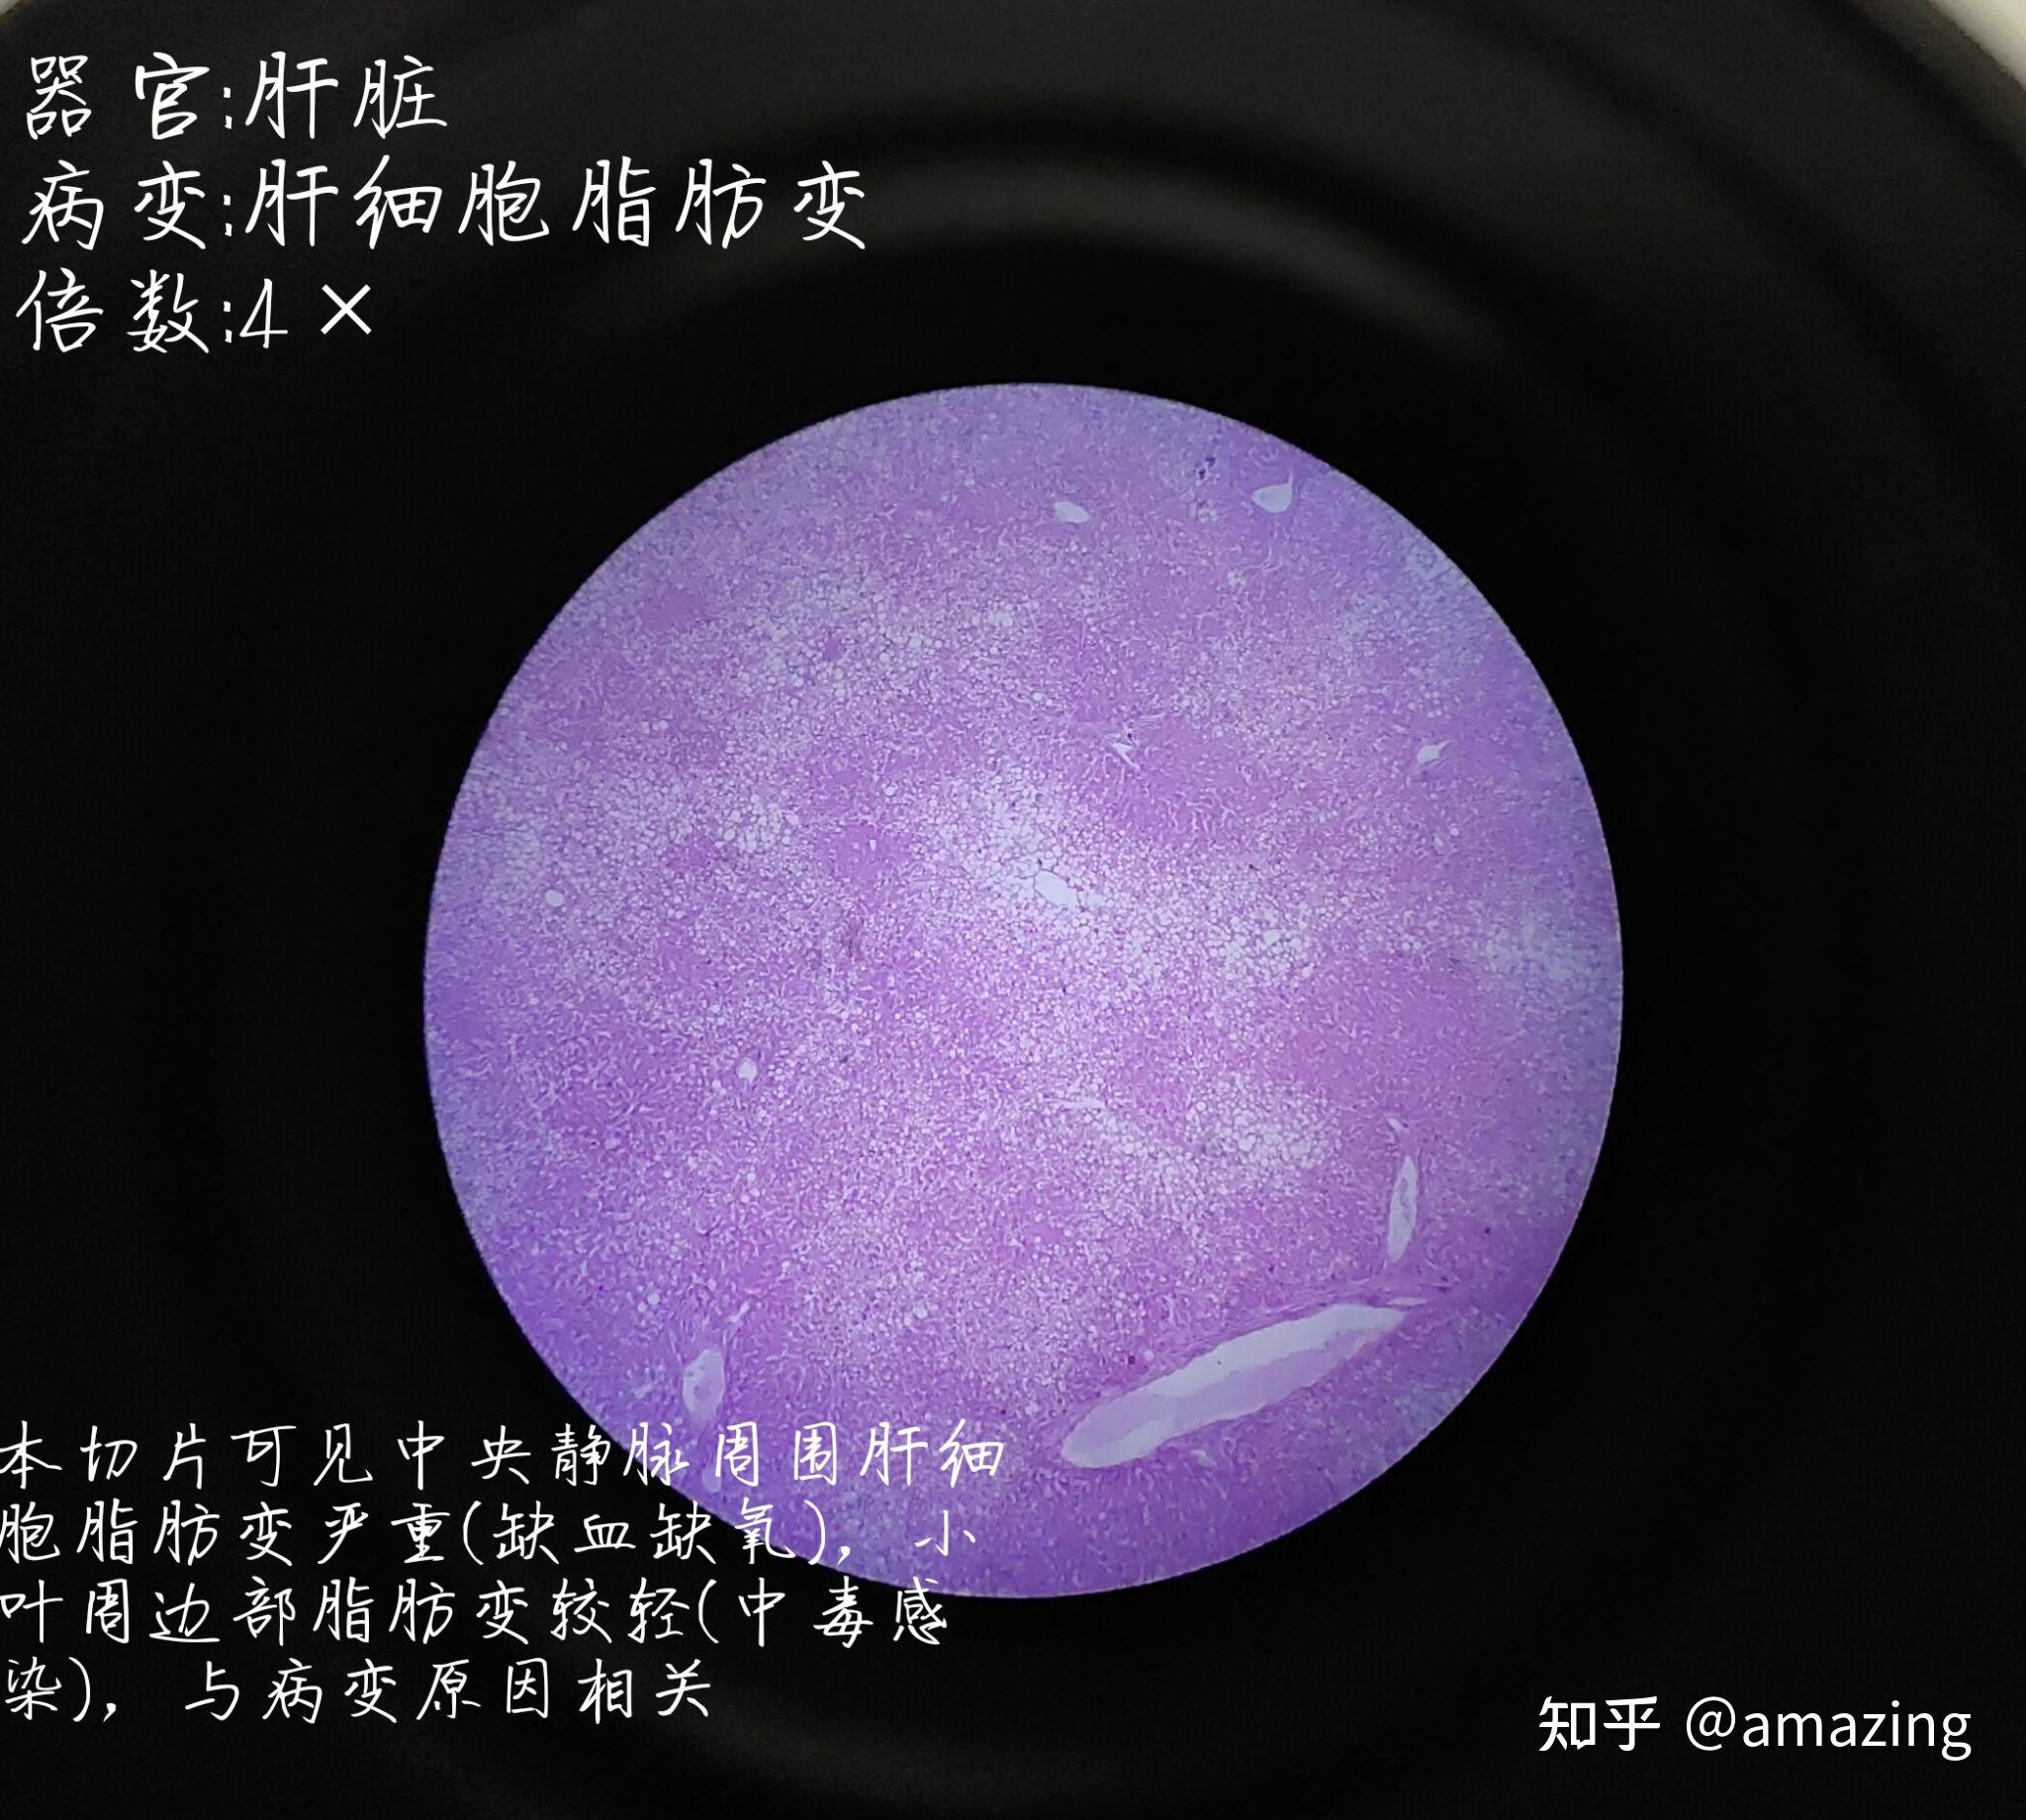 (0102)肝细胞脂肪变如图是一张40×的高倍镜图片,比较模糊,因为肝细胞